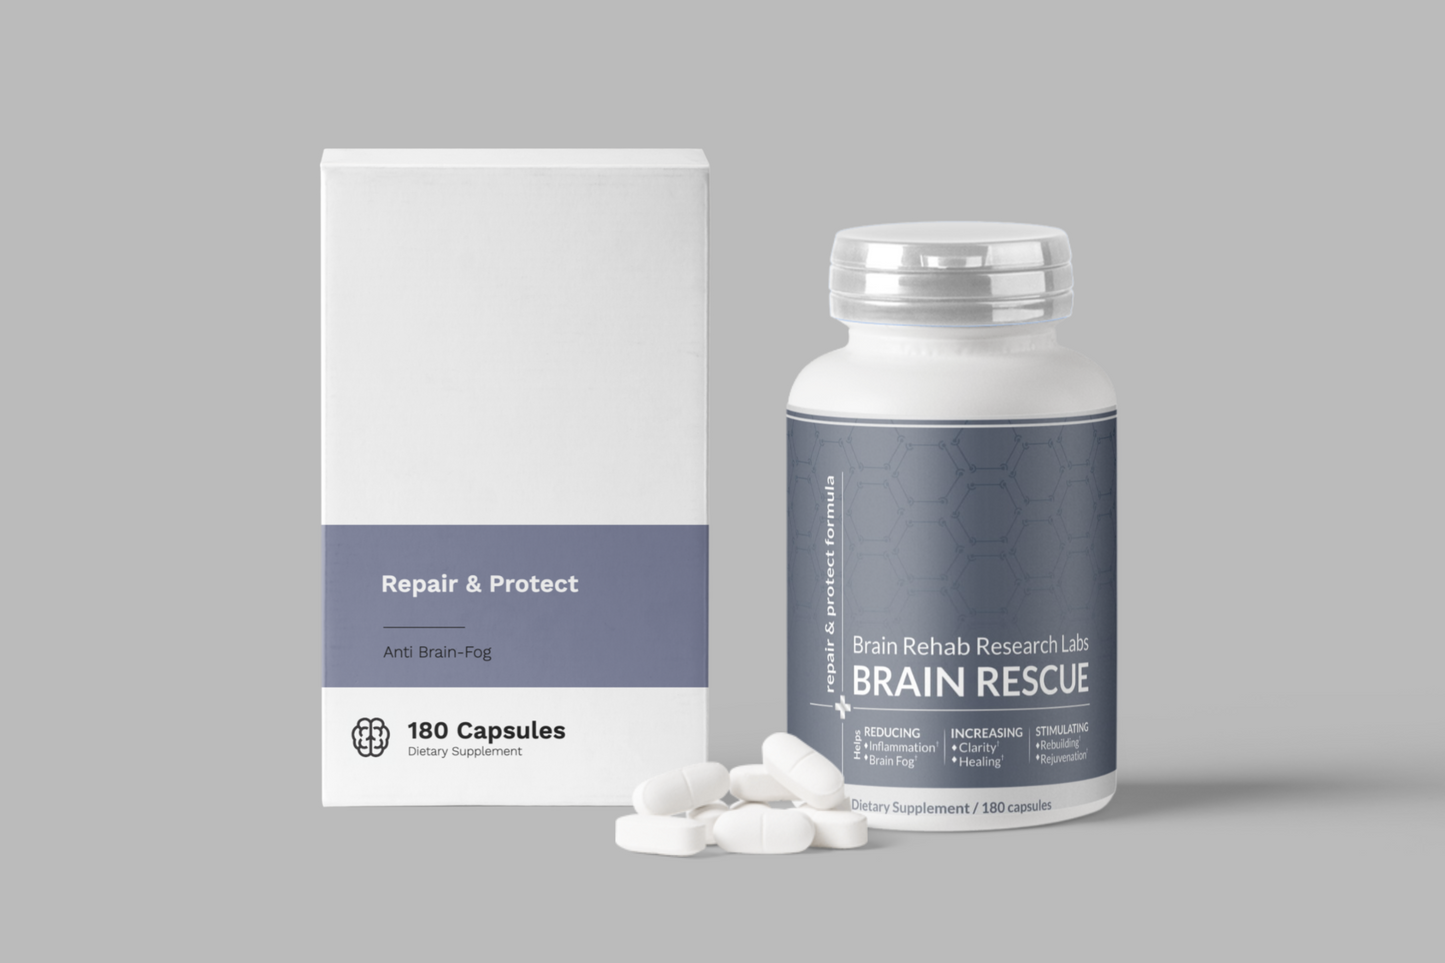 Brain Repair & Protect Supplement